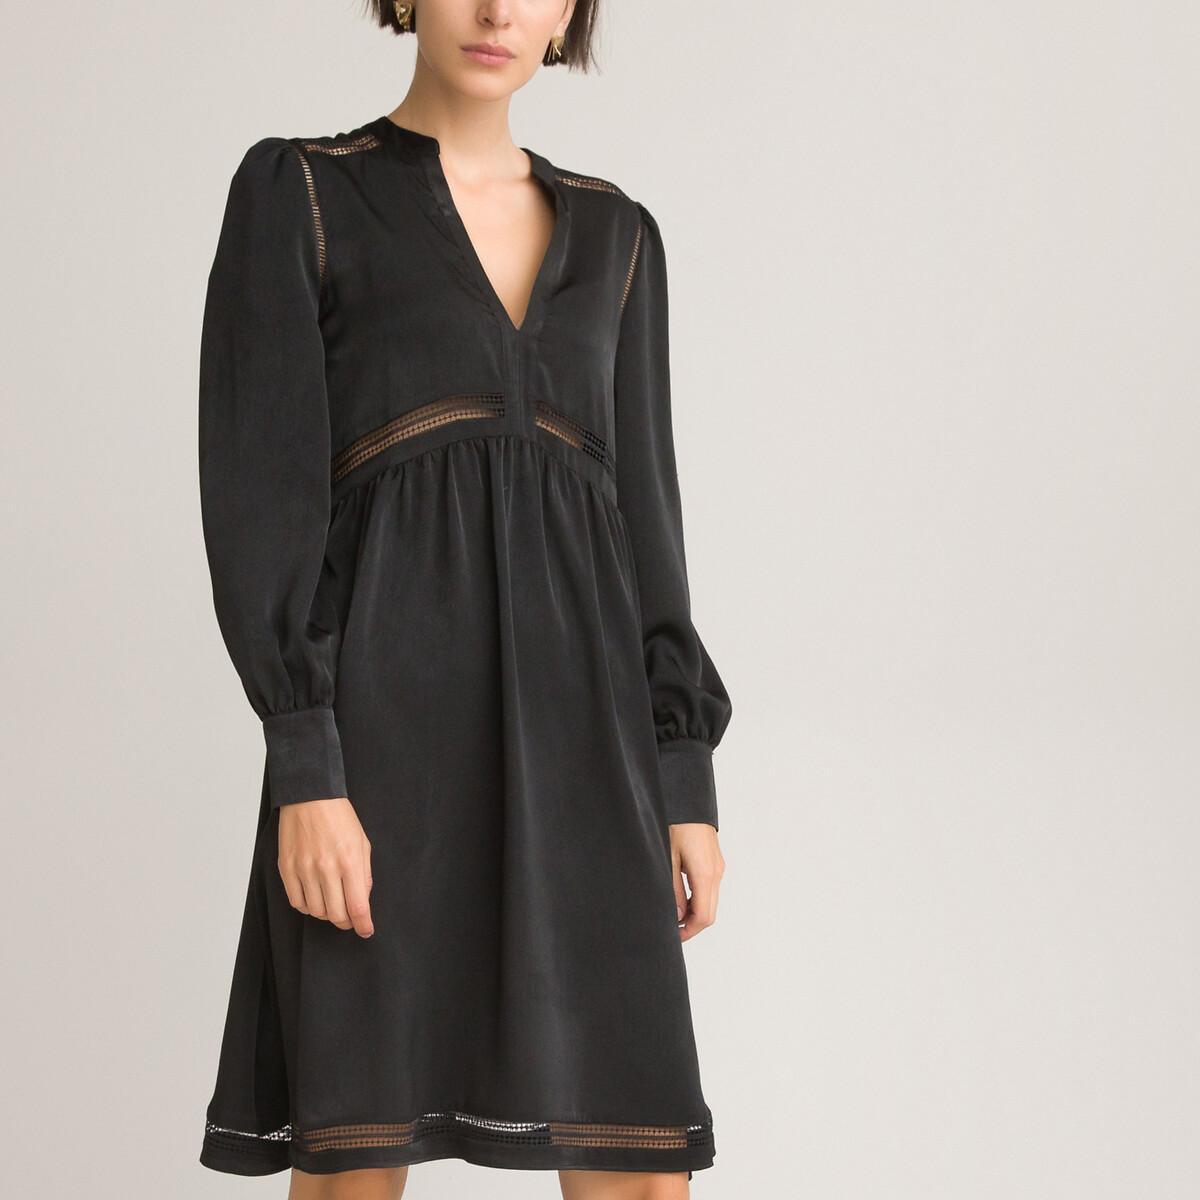 Платье короткое расклешенное с длинными рукавами 40 черный платье короткое расклешенное с длинными рукавами 40 черный